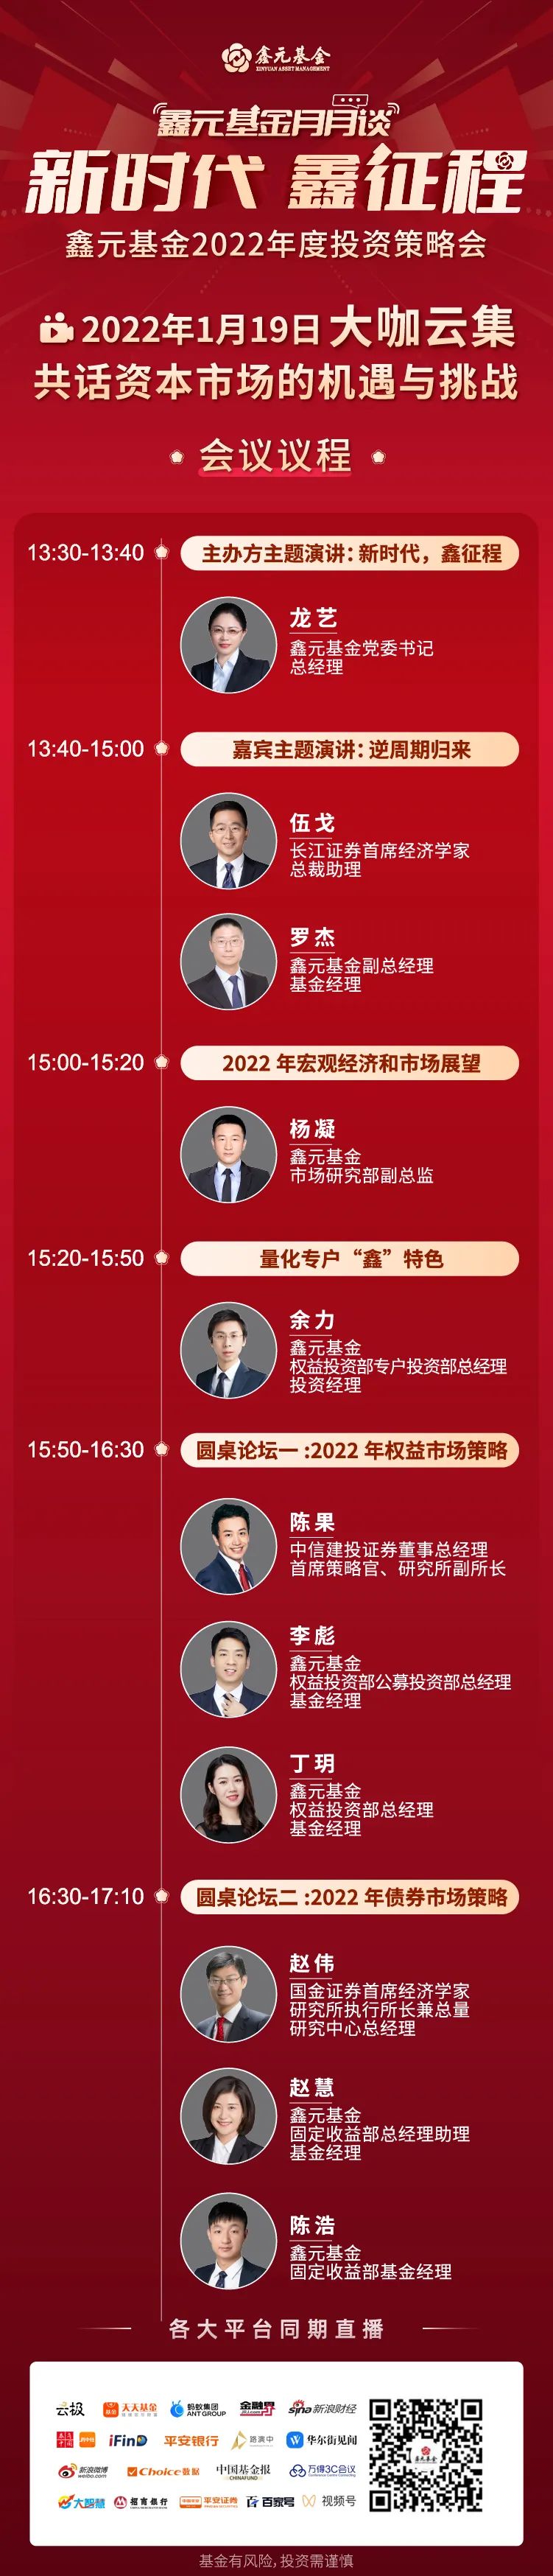 鑫元基金2022年投资策略会1月19日重磅来袭